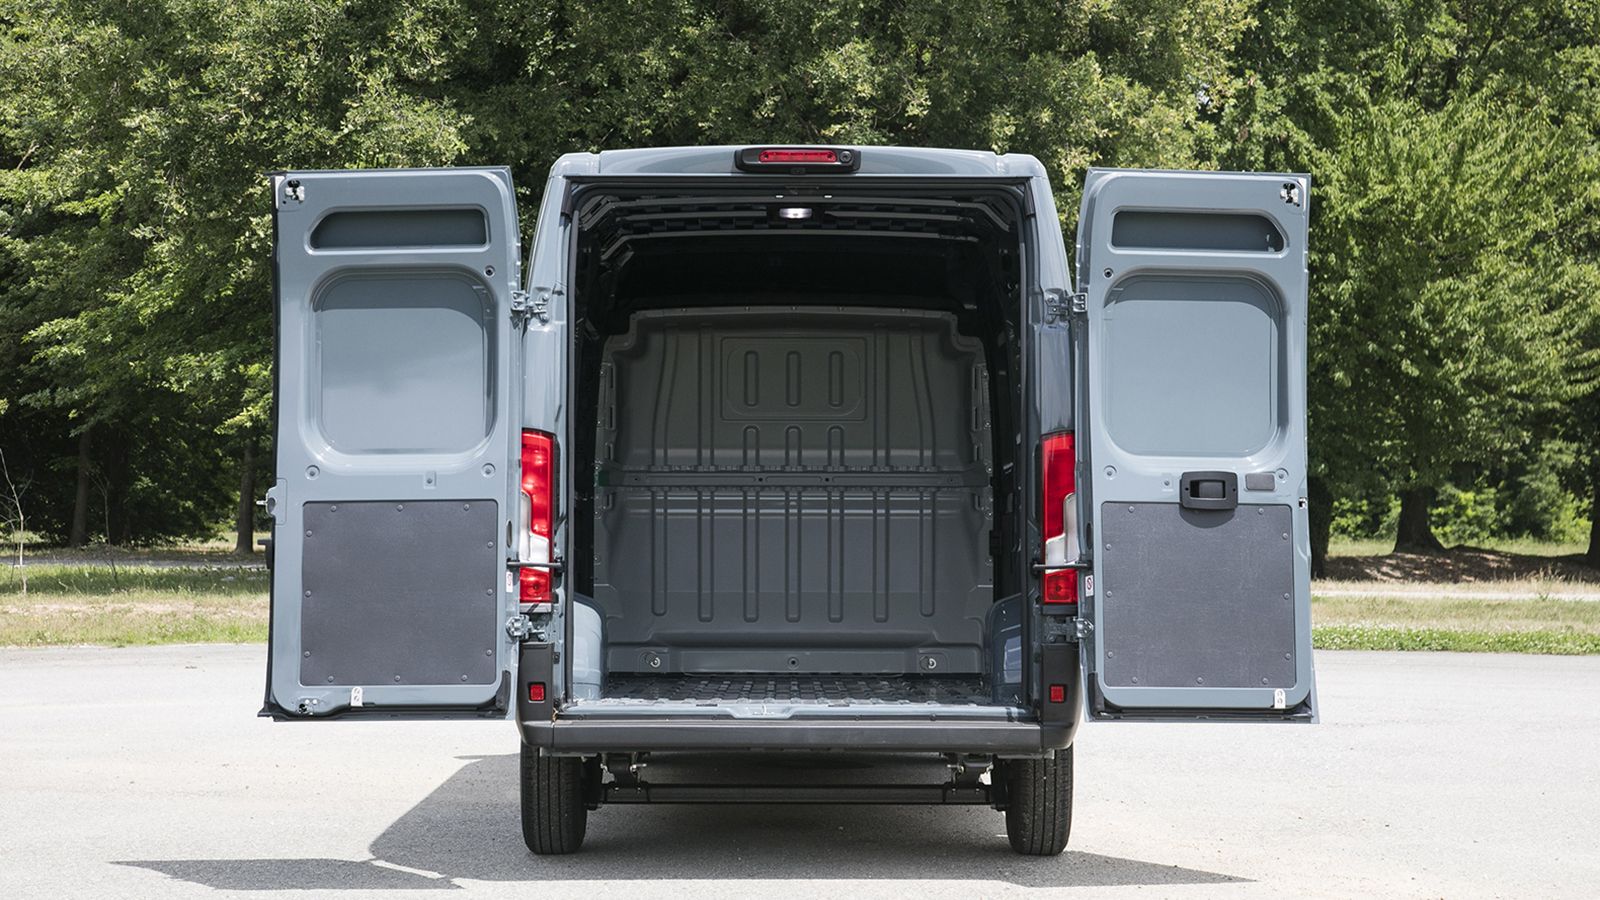 Οι εξαιρετικές μεταφορικές δυνατότητες του Μεγάλου Van της Fiat Professional διατηρούνται αναλλοίωτες ενώ… 